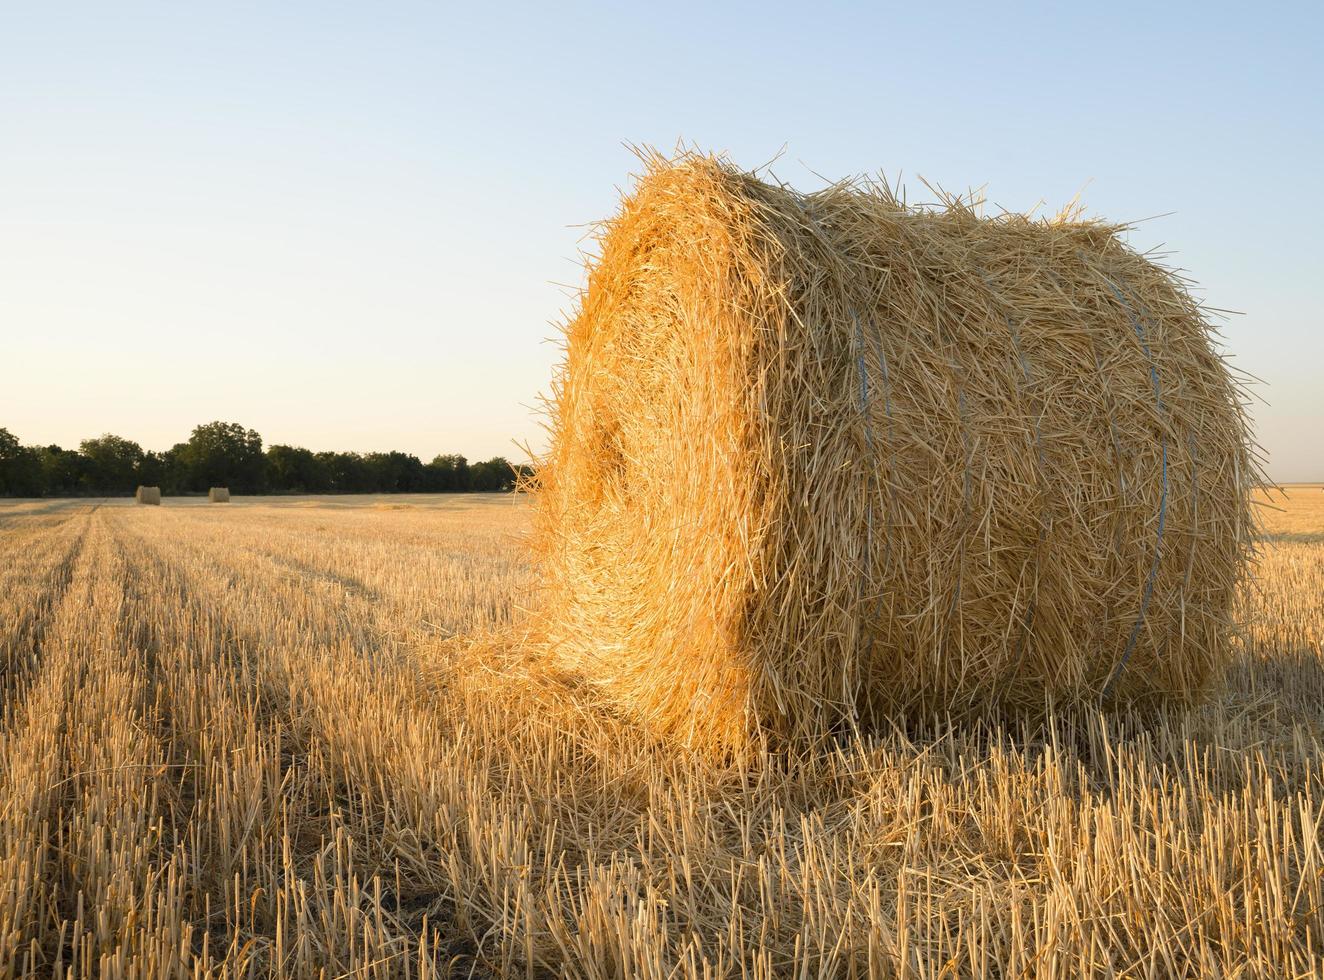 ein Ballen Weizenstroh auf einem Bauernhoffeld foto